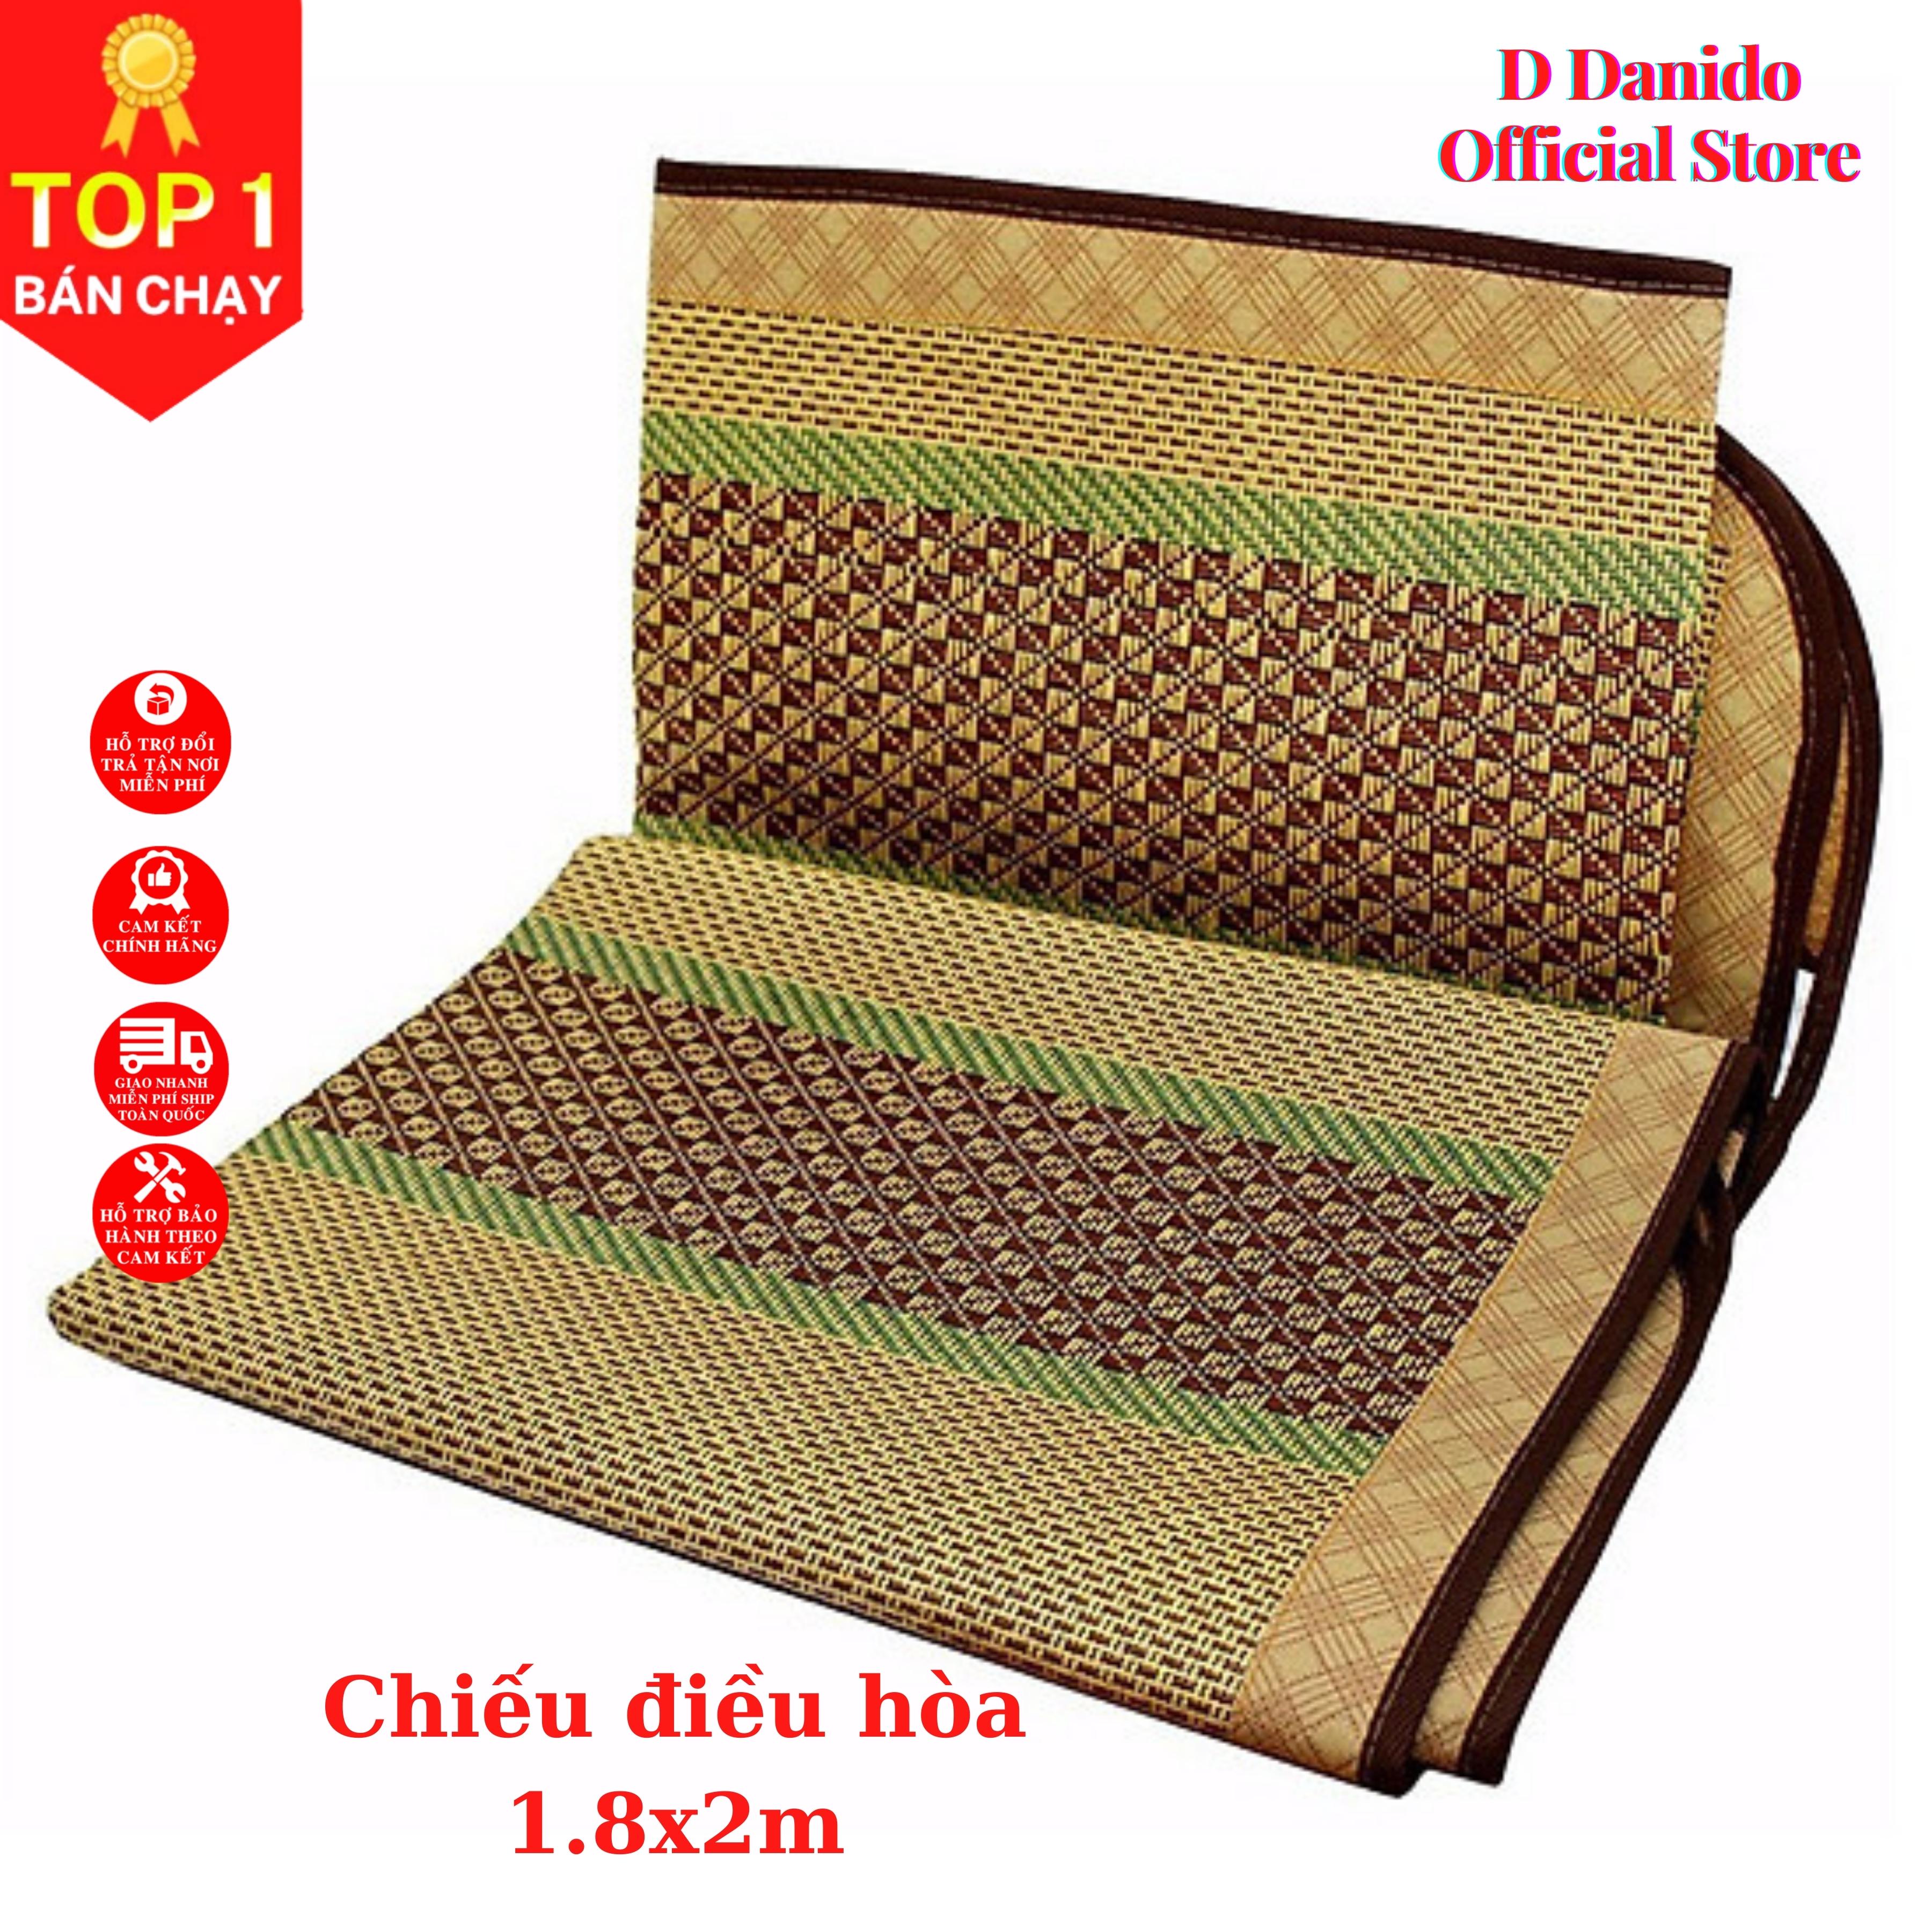 Chiếu điều hòa sợi mây tre đan tổng hợp lót vải không dệt cao cấp hàng xuất khẩu 2 mặt giá rẻ 1m2 1m6 1m8 D Danido